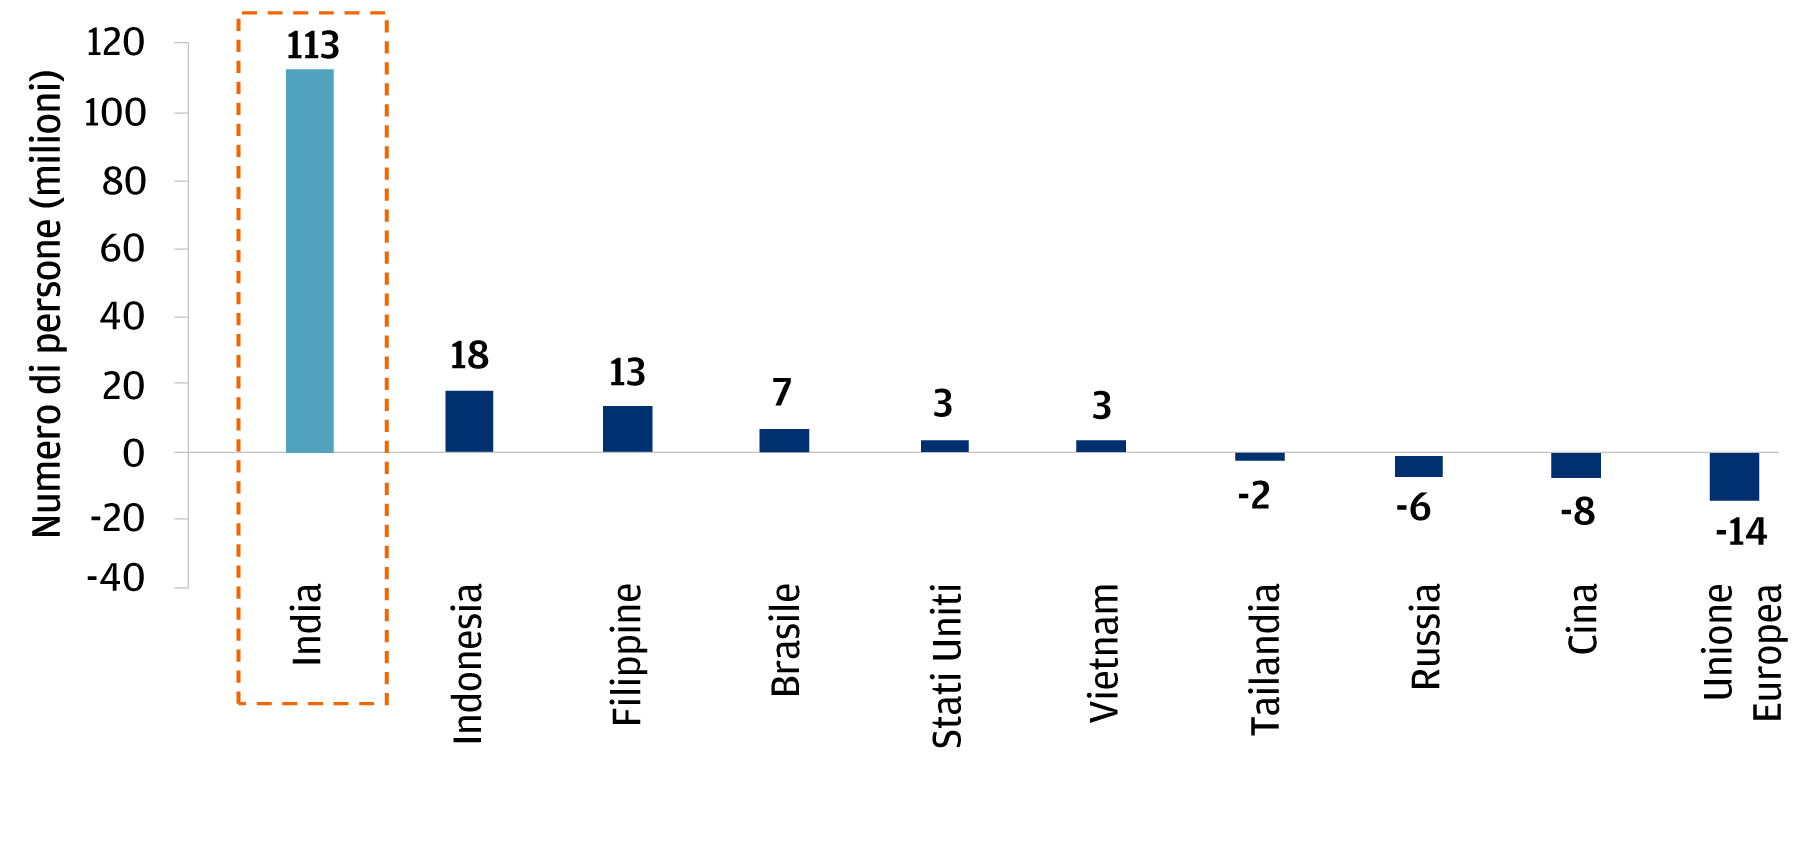 Il grafico a barre mostra la variazione prevista della popolazione in età lavorativa dal 2018 al 2028 in 10 paesi: India, Indonesia, Filippine, Brasile, Stati Uniti, Vietnam, Tailandia, Russia, Cina, Unione Europea. L’India si distingue per il maggiore aumento della popolazione in età lavorativa, con un aumento previsto di 113 milioni di persone. 